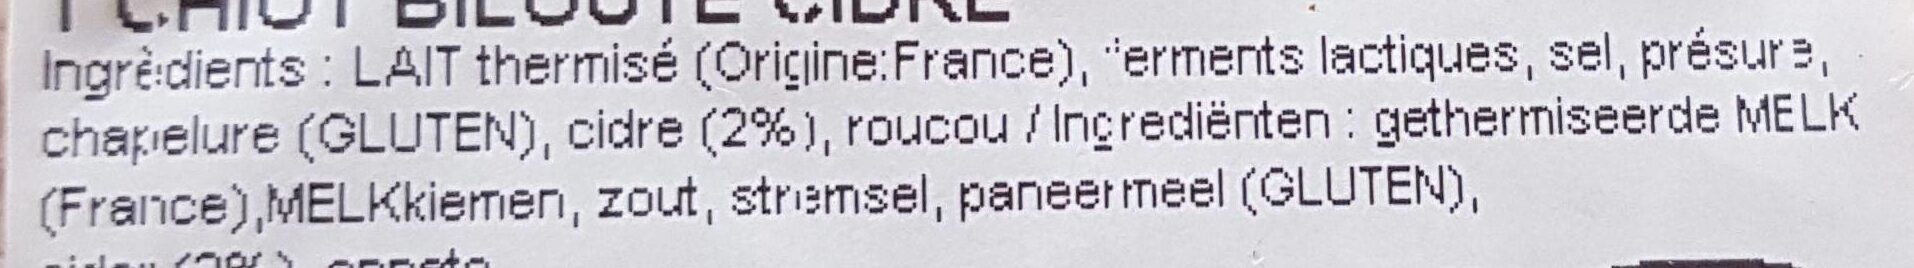 T'chiot Biloute affiné au cidre - Ingredients - fr